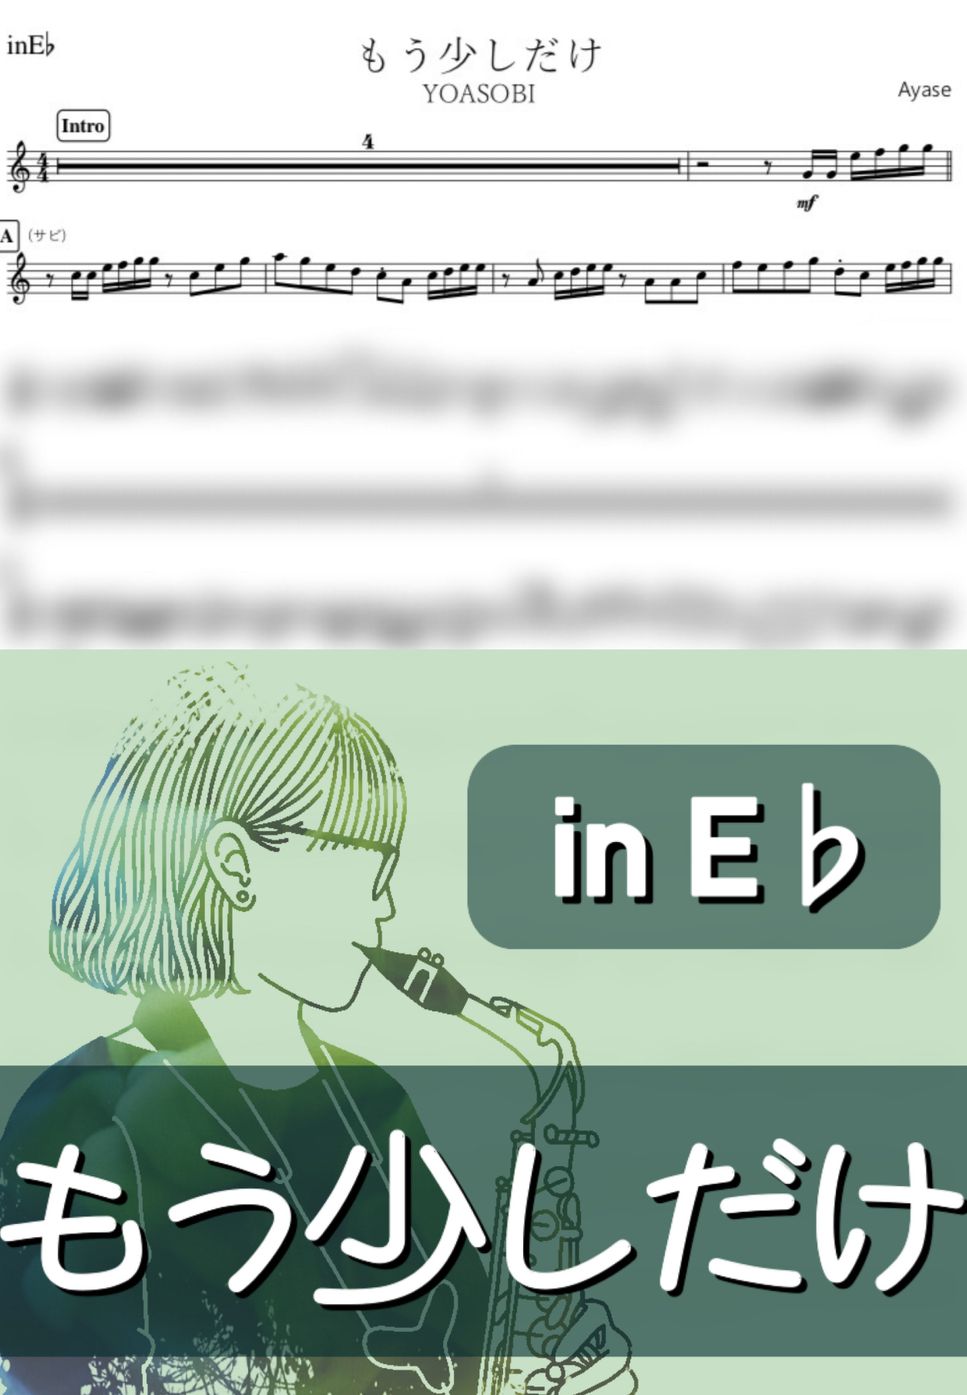 YOASOBI - もう少しだけ (E♭) by kanamusic